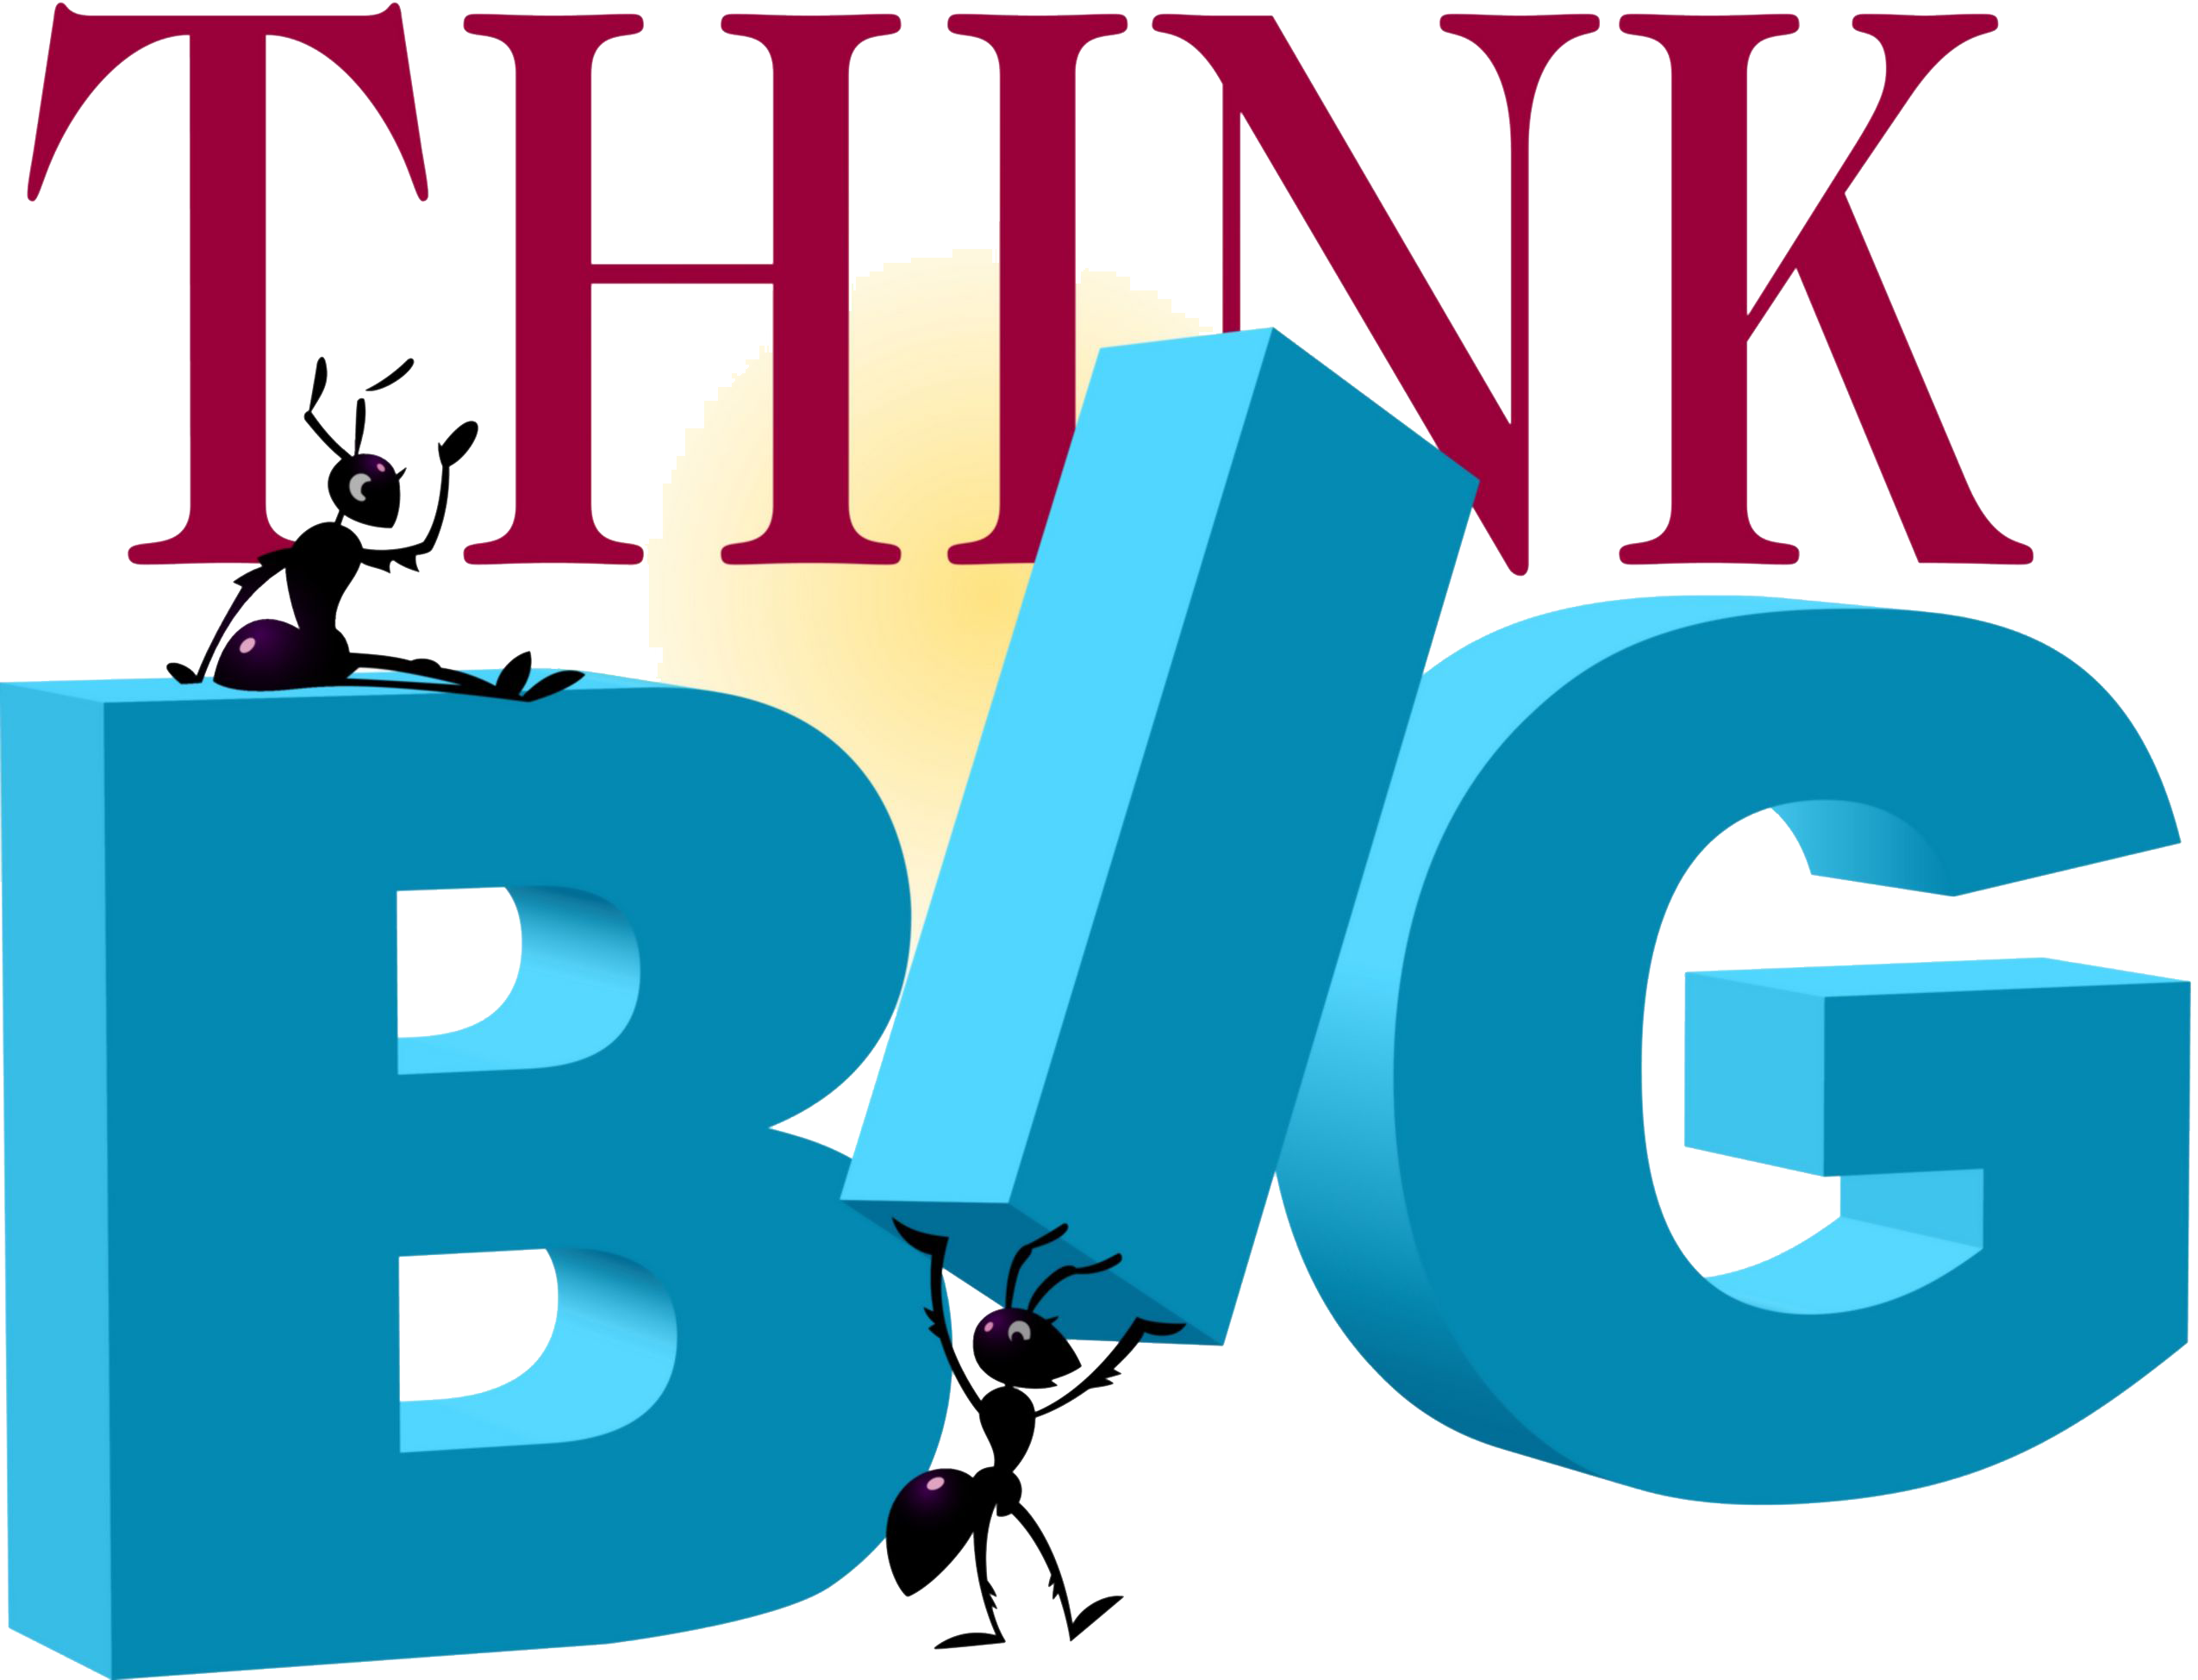 Think Big Online